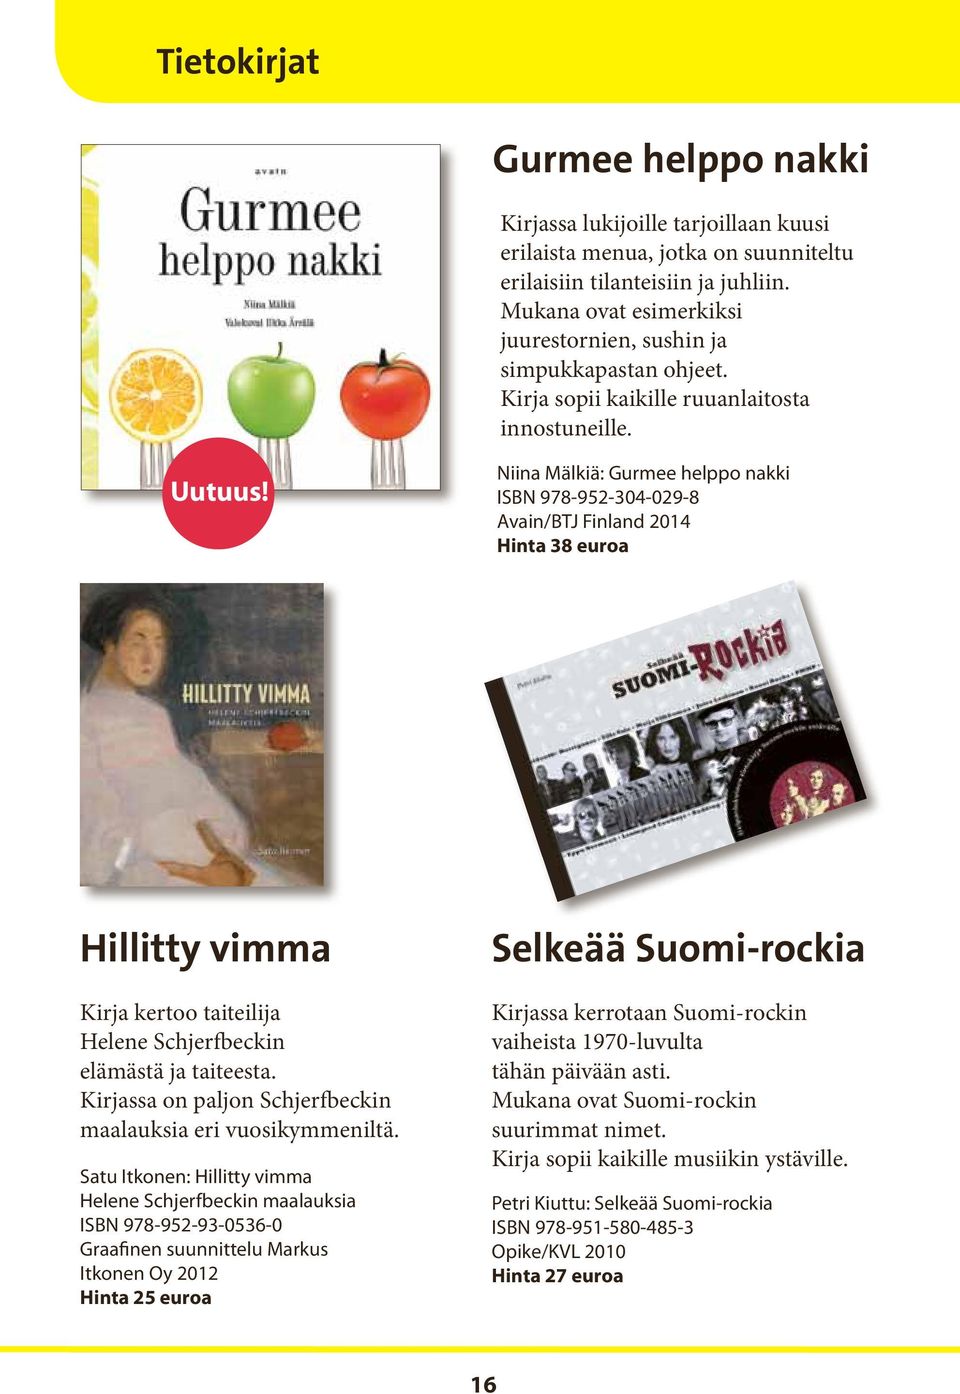 Niina Mälkiä: Gurmee helppo nakki ISBN 978-952-304-029-8 Avain/BTJ Finland 2014 Hinta 38 euroa Hillitty vimma Kirja kertoo taiteilija Helene Schjerfbeckin elämästä ja taiteesta.